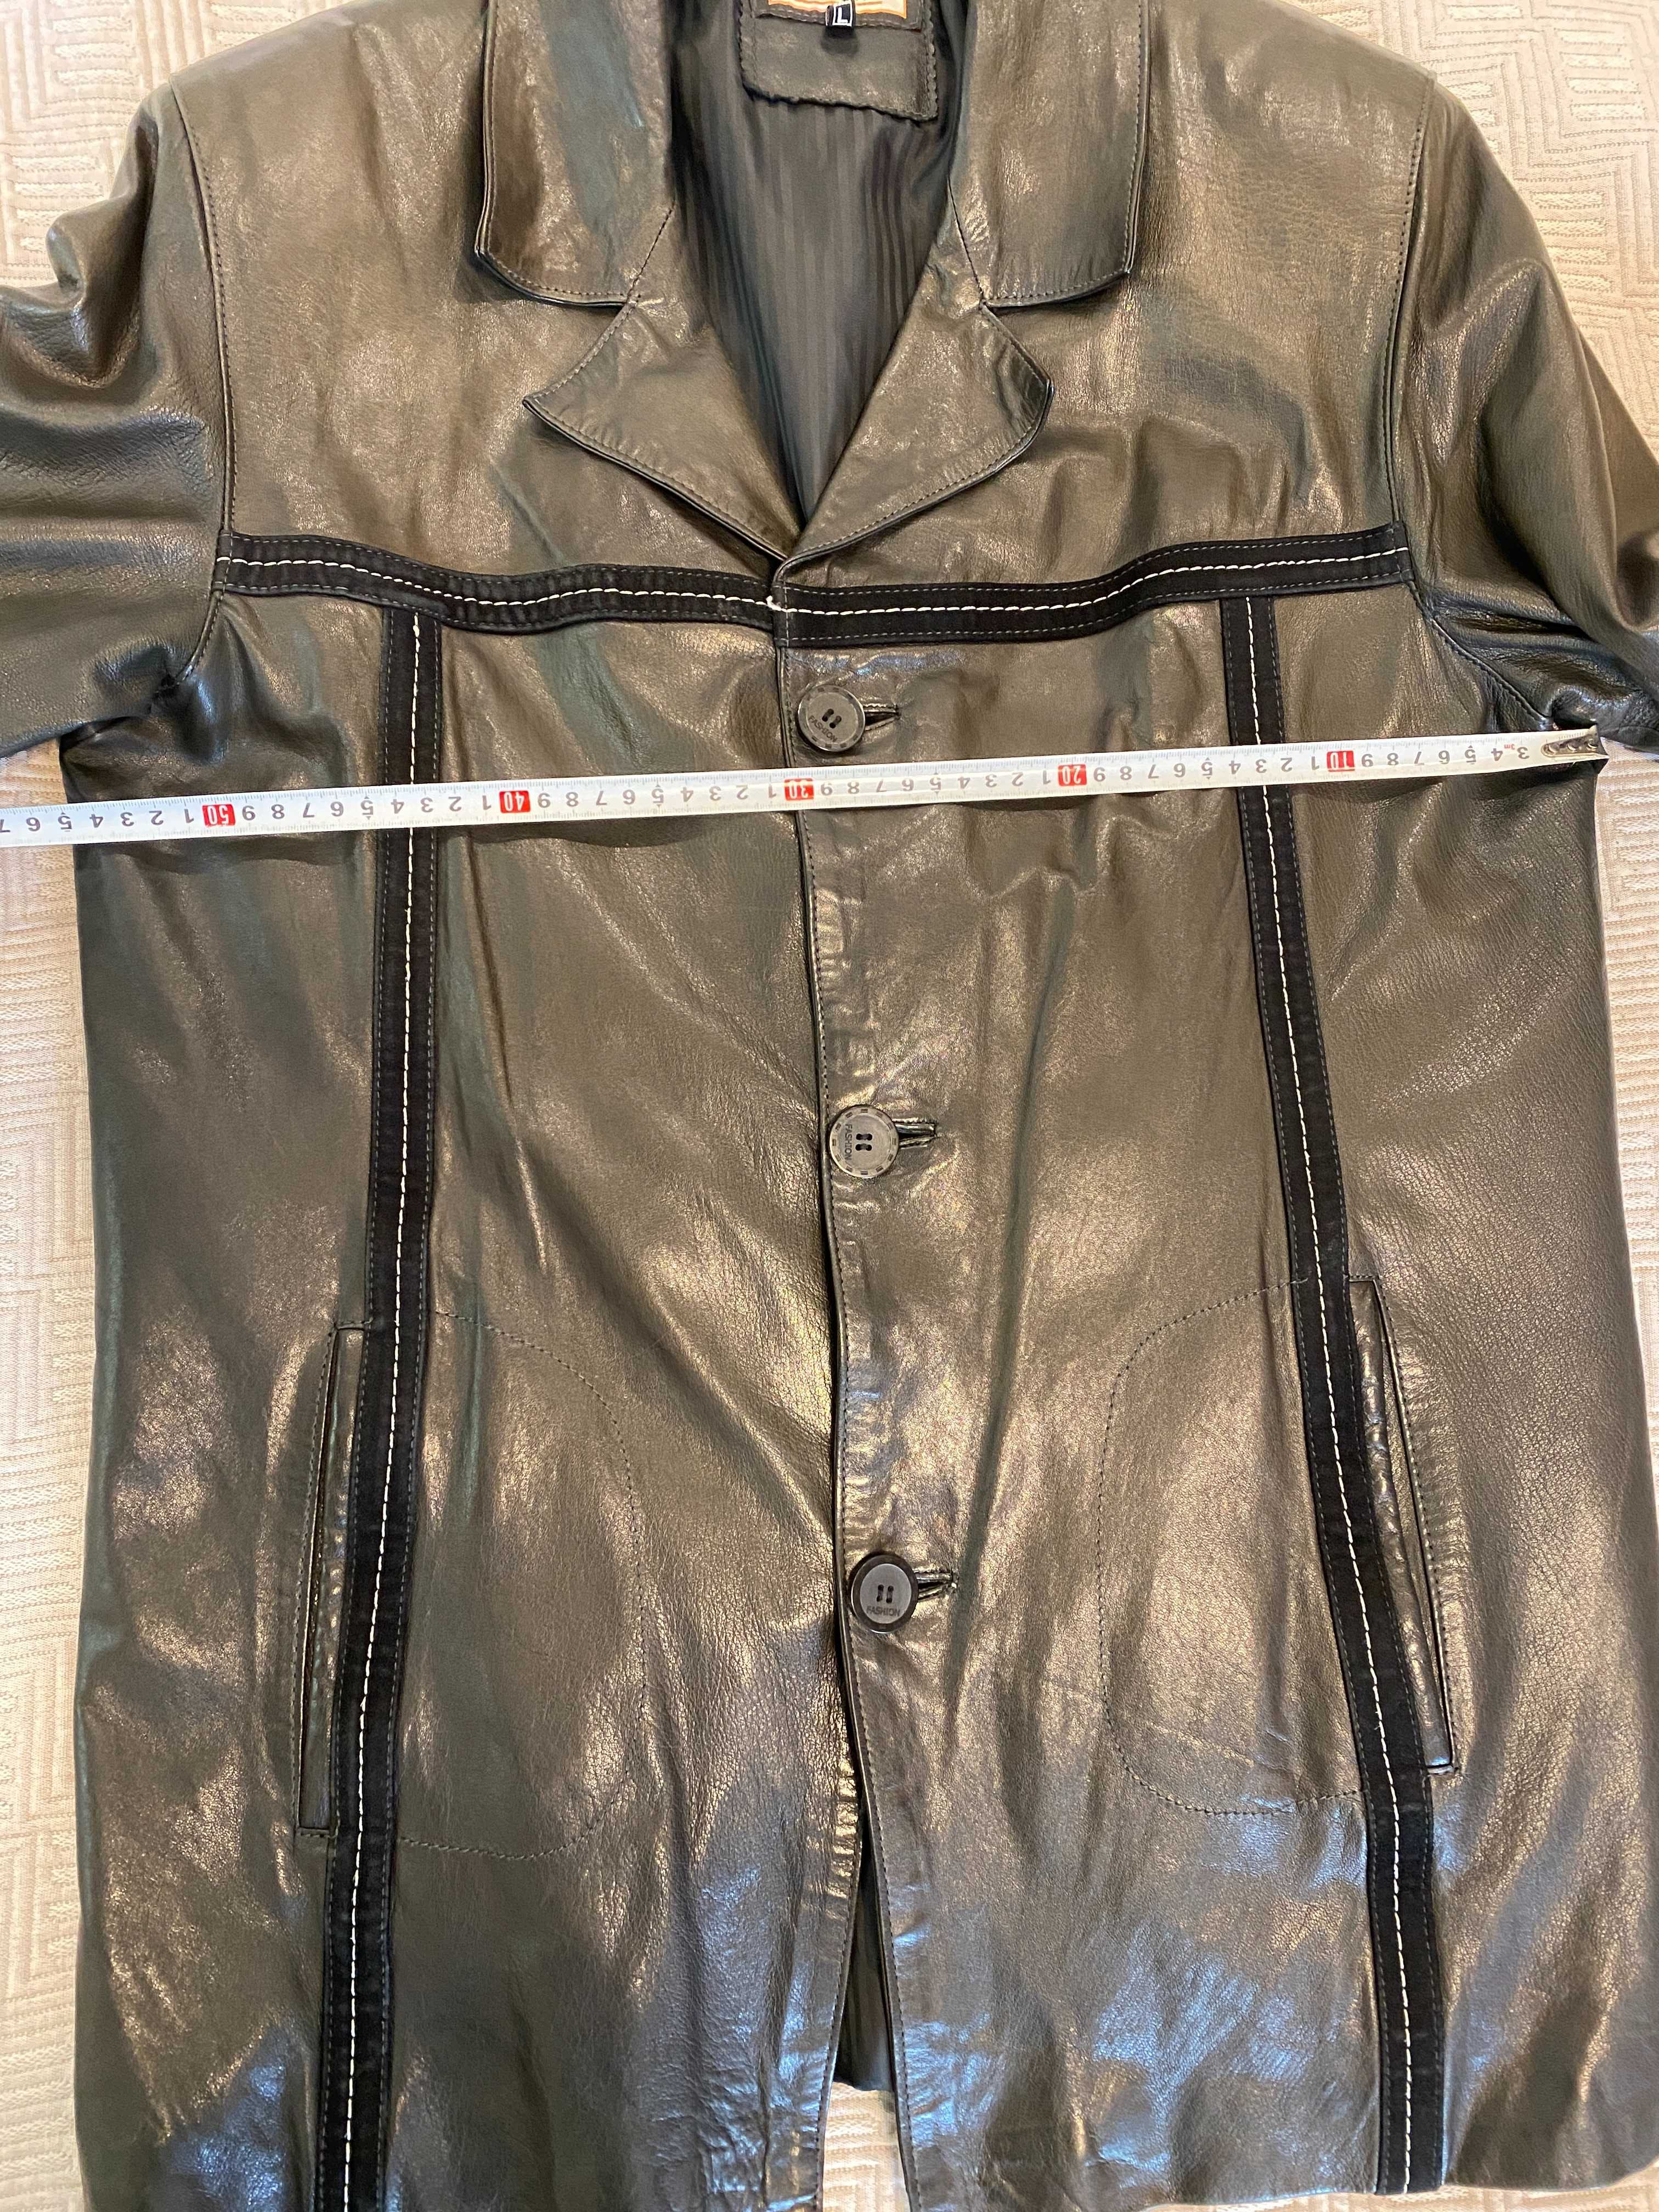 Мужская кожаная черная курточка  куртка тренч пиджак  52 l xl